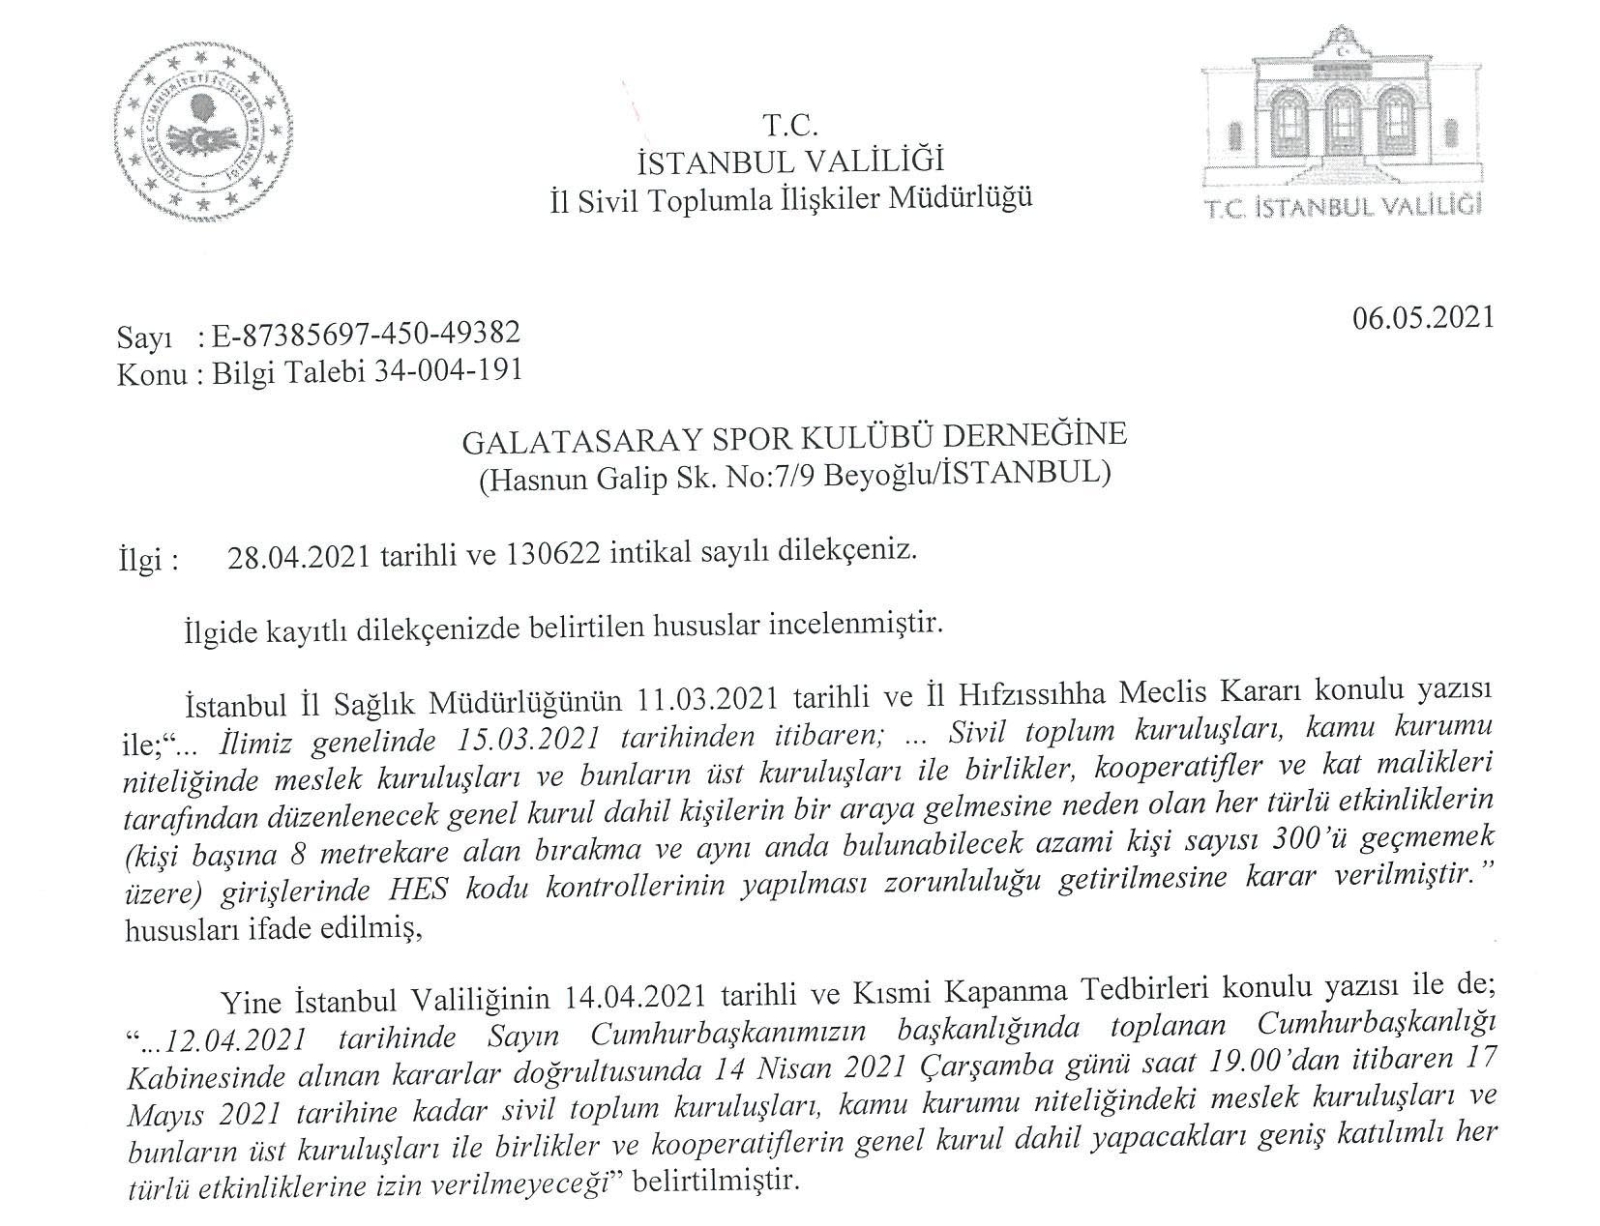 Galatasaray’da hedeflenen seçim tarihi haziran